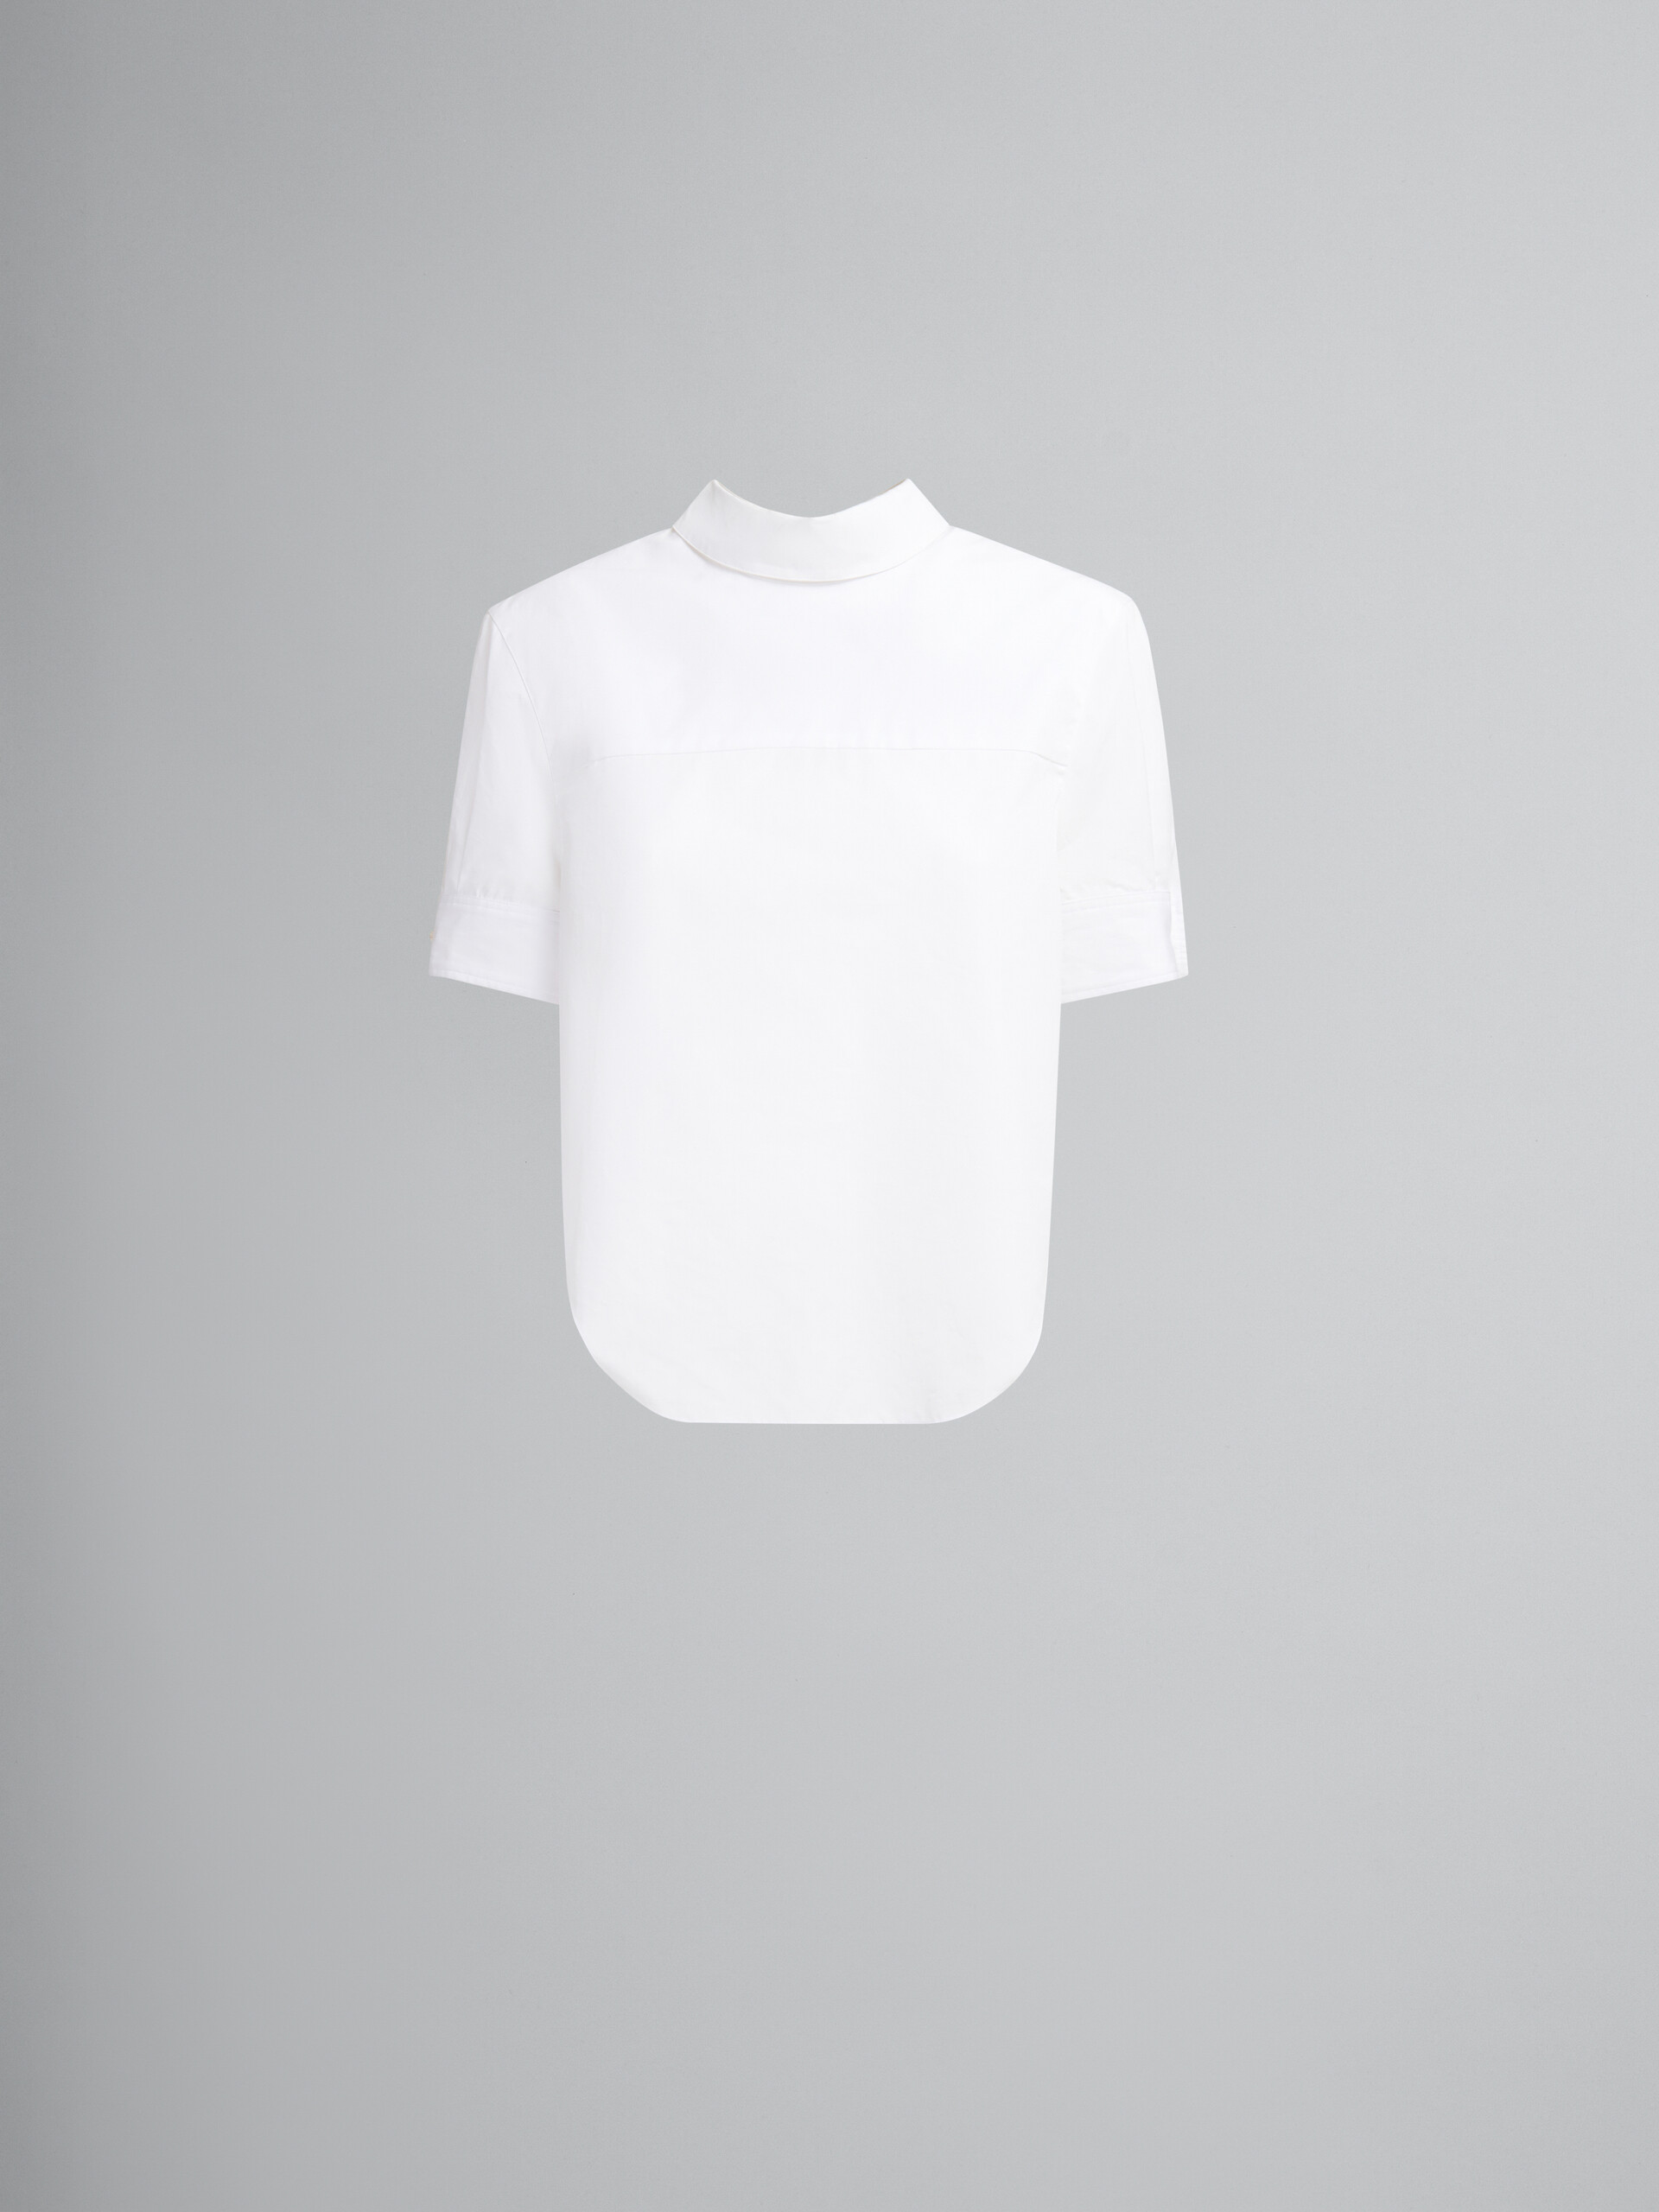 Chemise inversée en popeline biologique blanche - Chemises - Image 1